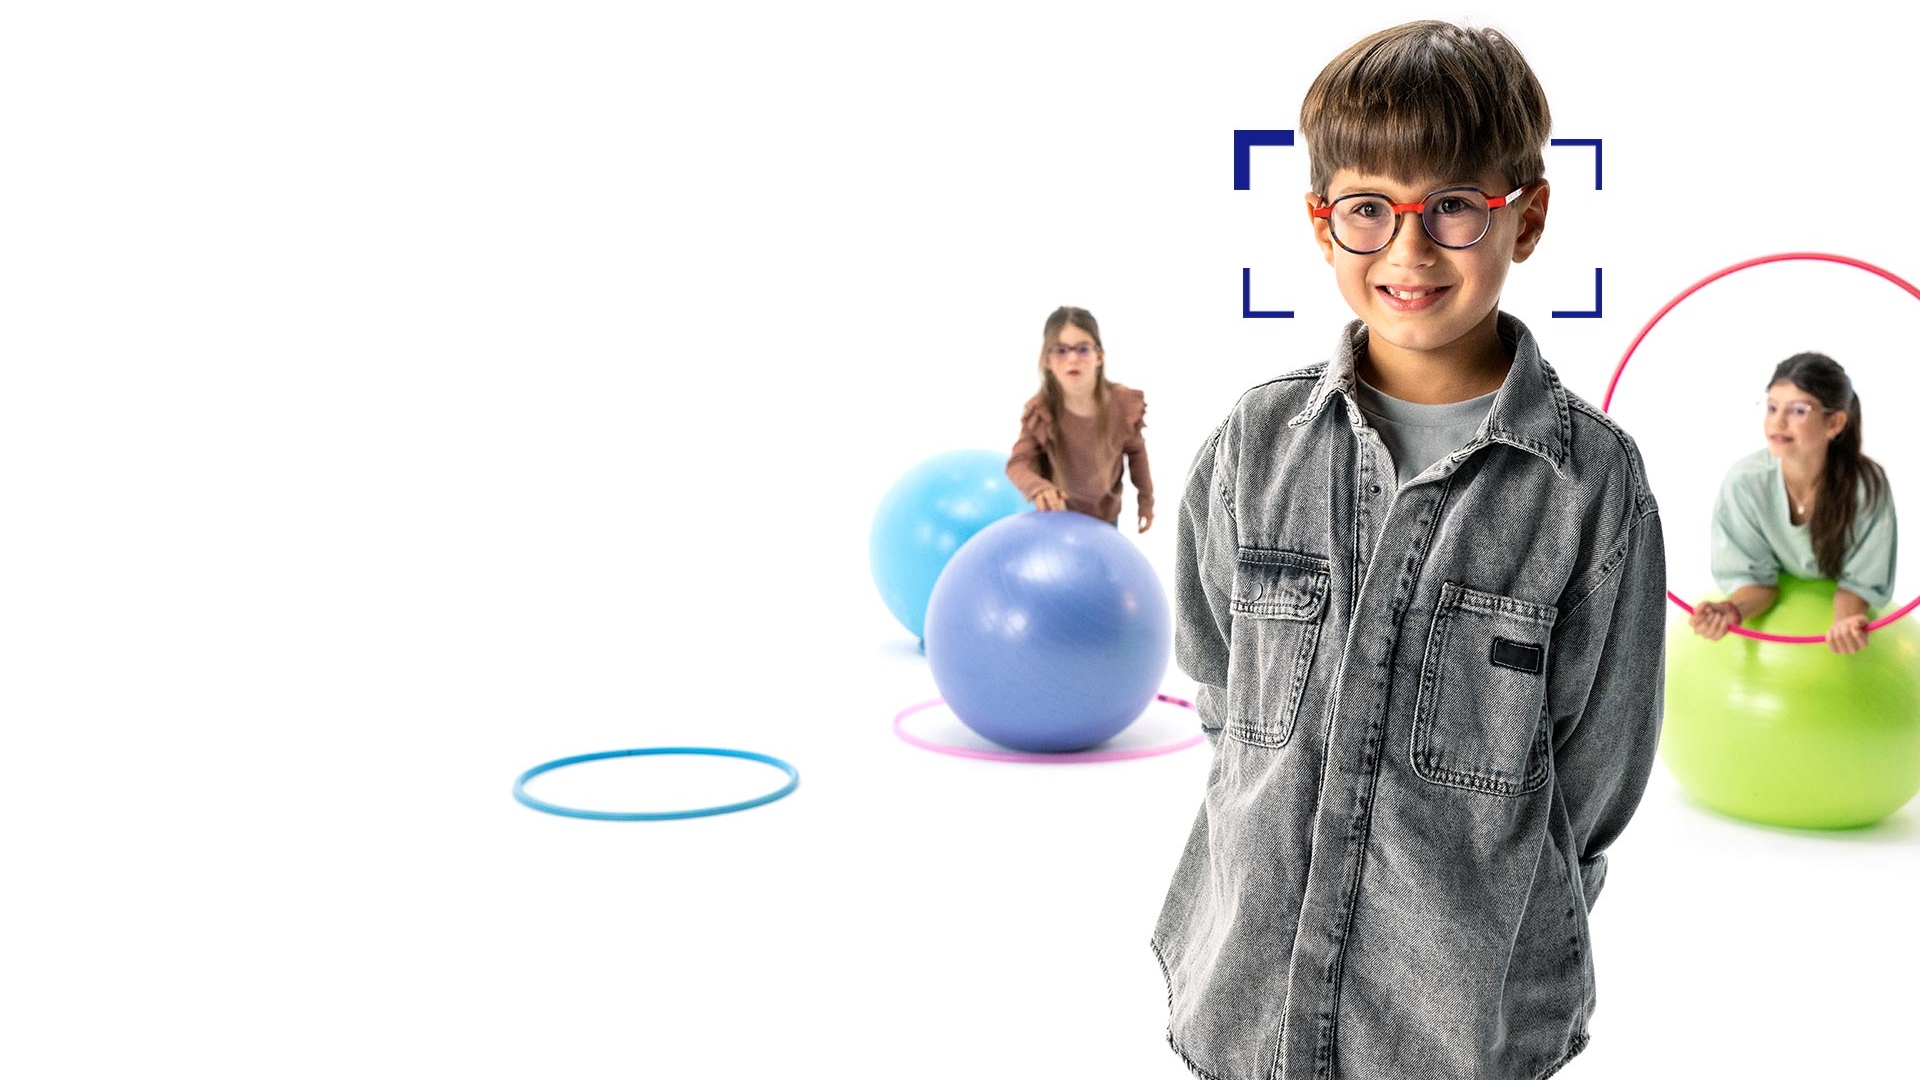 Ein Junge mit braunen Haaren, runder Brille und ZEISS MyoCare Brillengläsern steht im Vordergrund und lächelt in die Kamera. Im Hintergrund sind zwei Mädchen mit ZEISS MyoCare Brillengläsern zu sehen, die mit Reifen und Gymnastikbällen spielen.